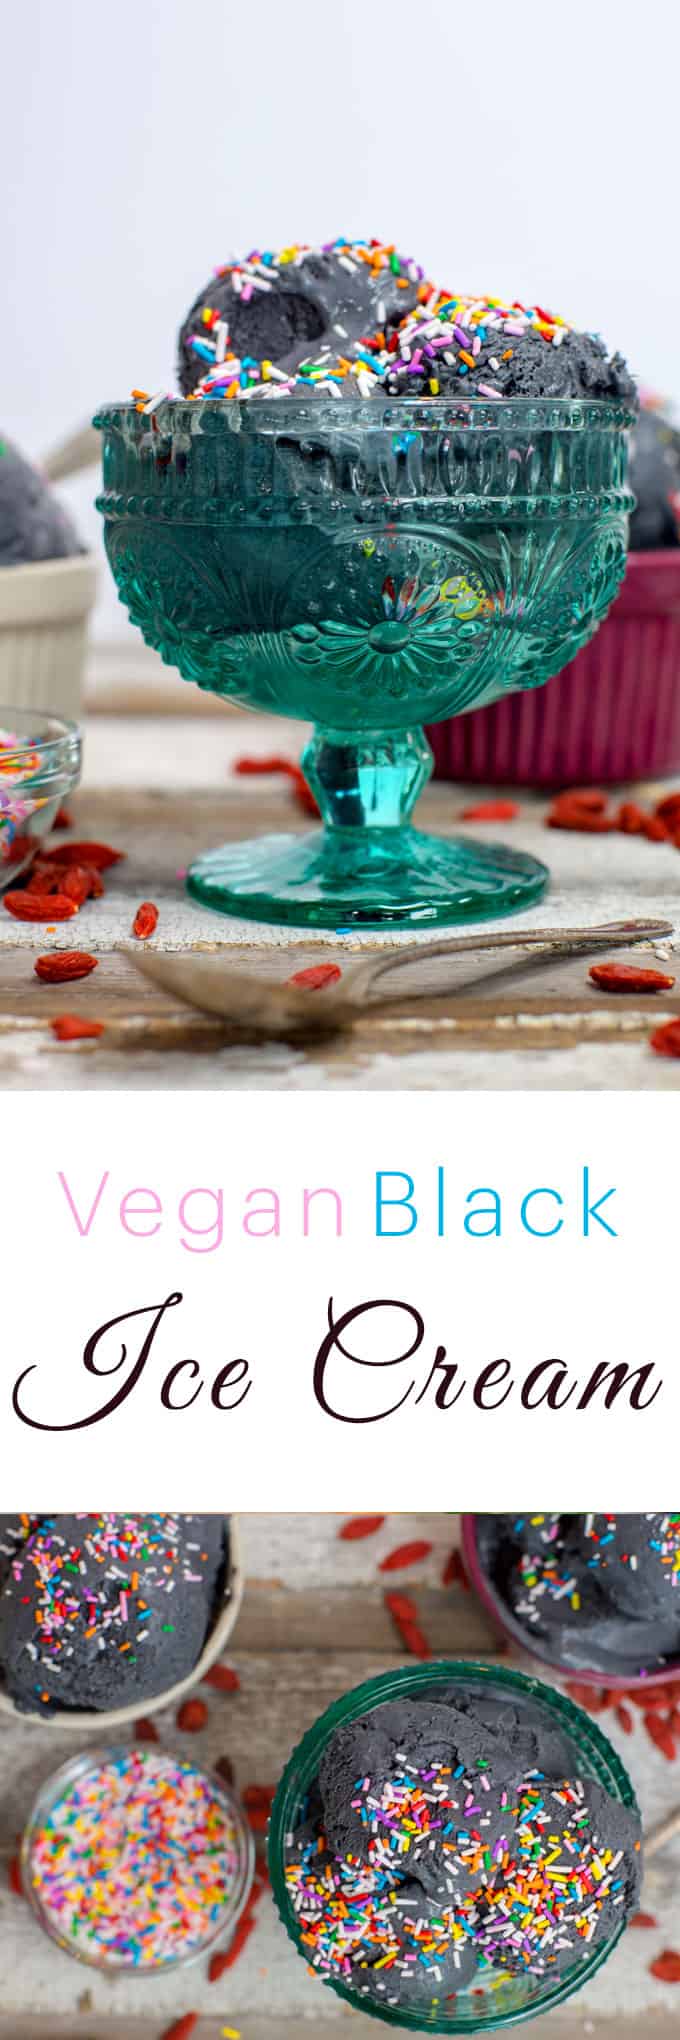 Easy Vegan Pineapple Coconut Ice Cream Recipe | Black Ice Cream | The Edgy Veg